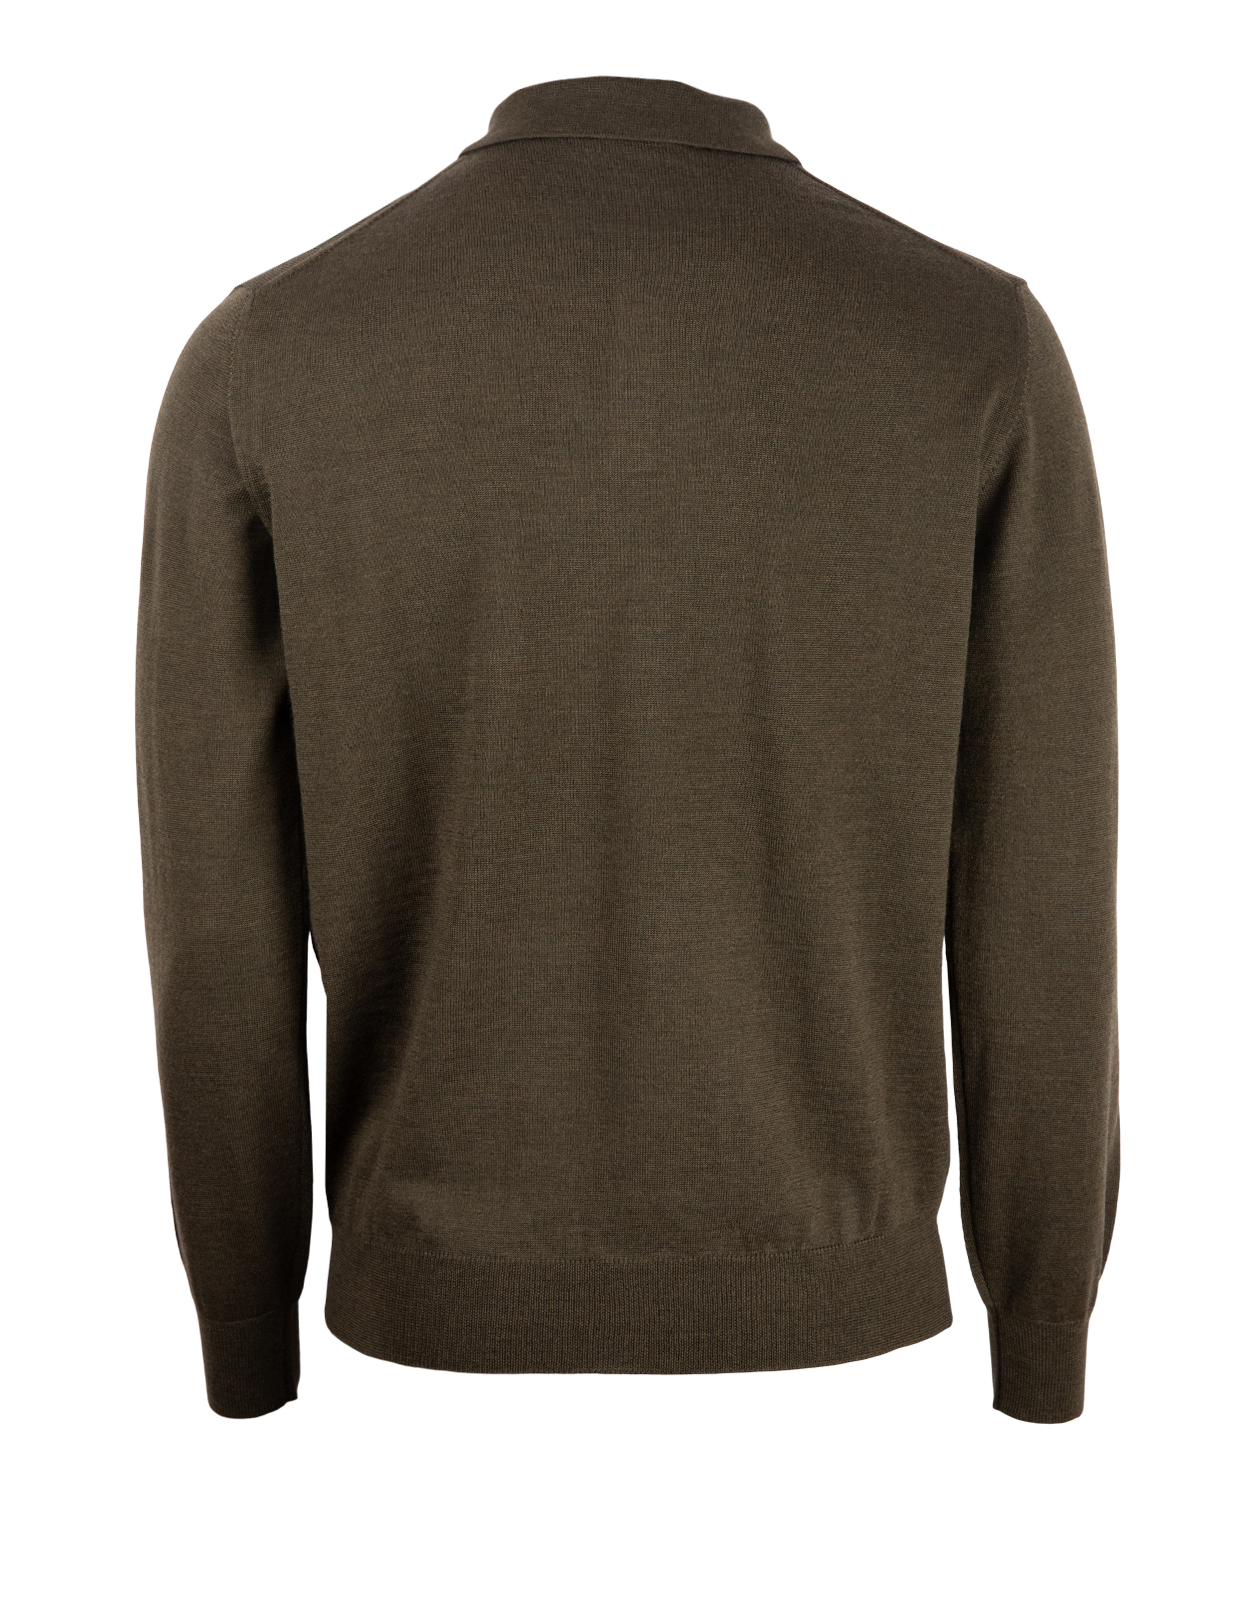 Poloshirt Sweater Merino Olive Green